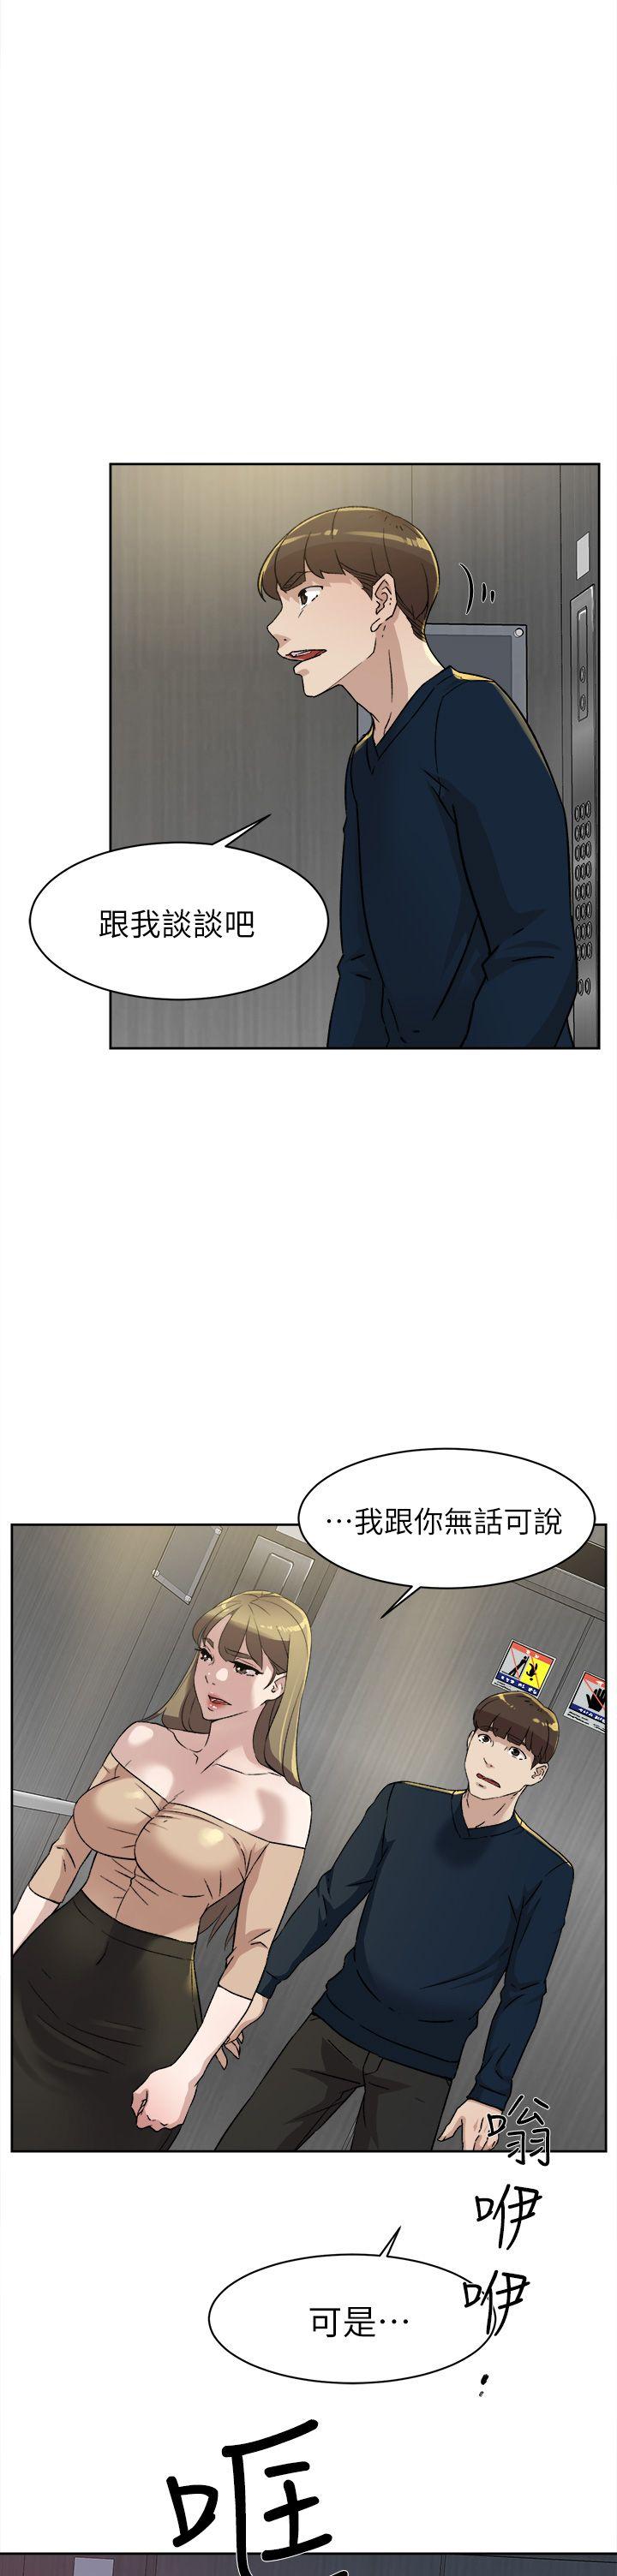 韩国污漫画 她的高跟鞋(無刪減) 第76话-昨晚发生的事 1